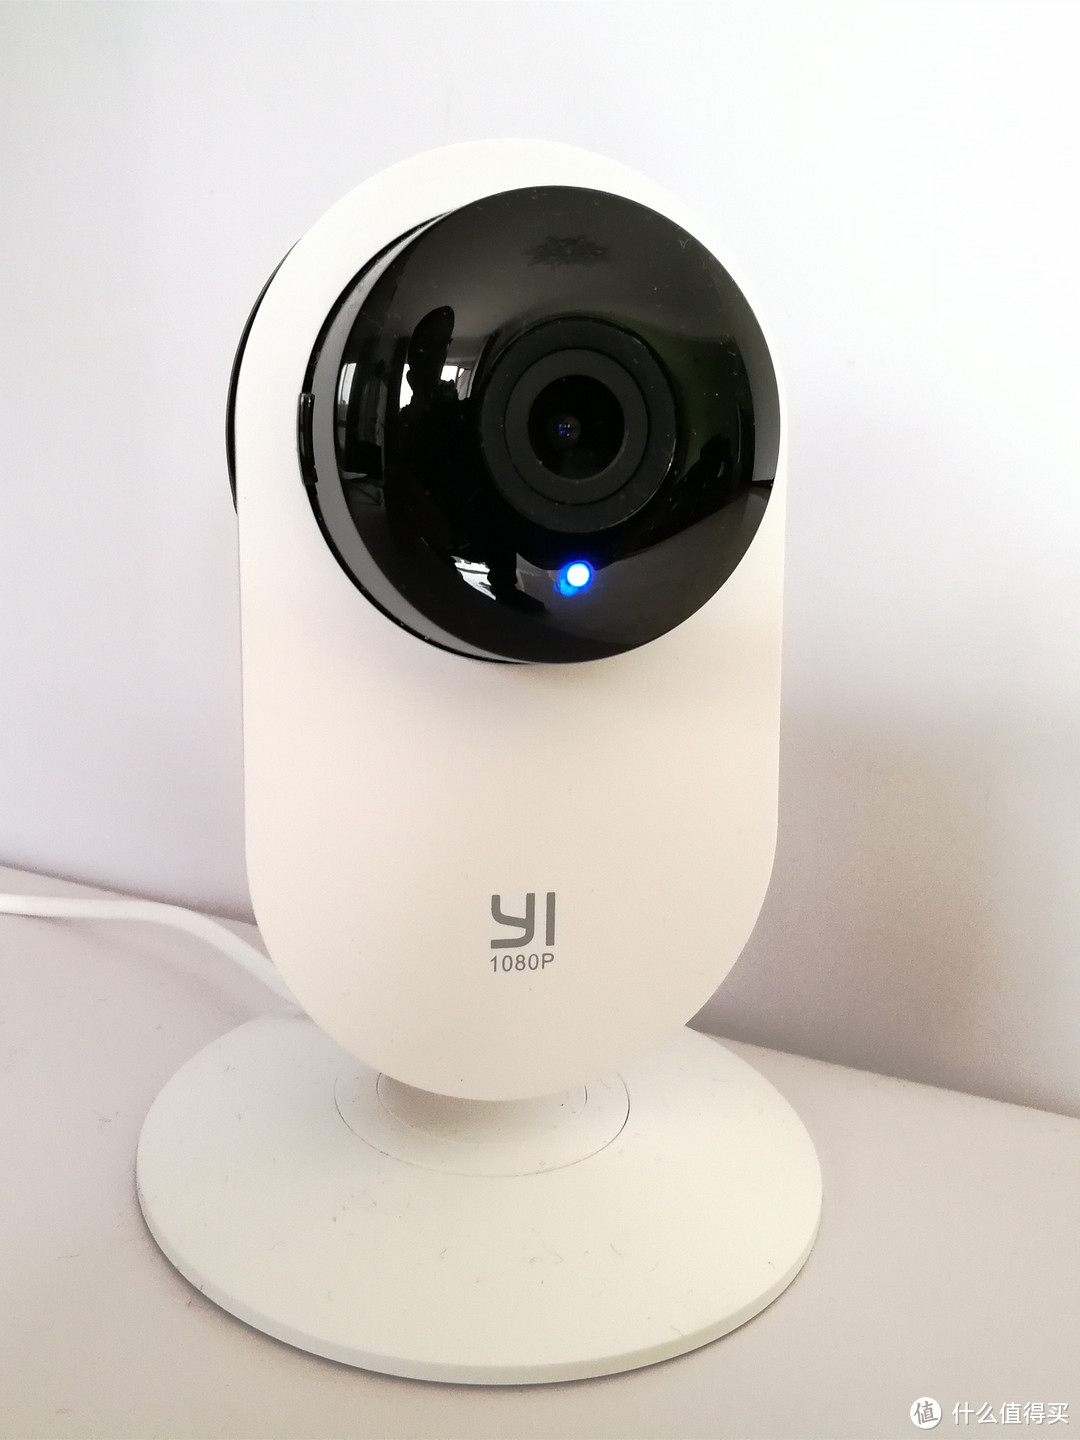 便宜好用的入门级家庭监控产品——小蚁1080P智能摄像机夜视版